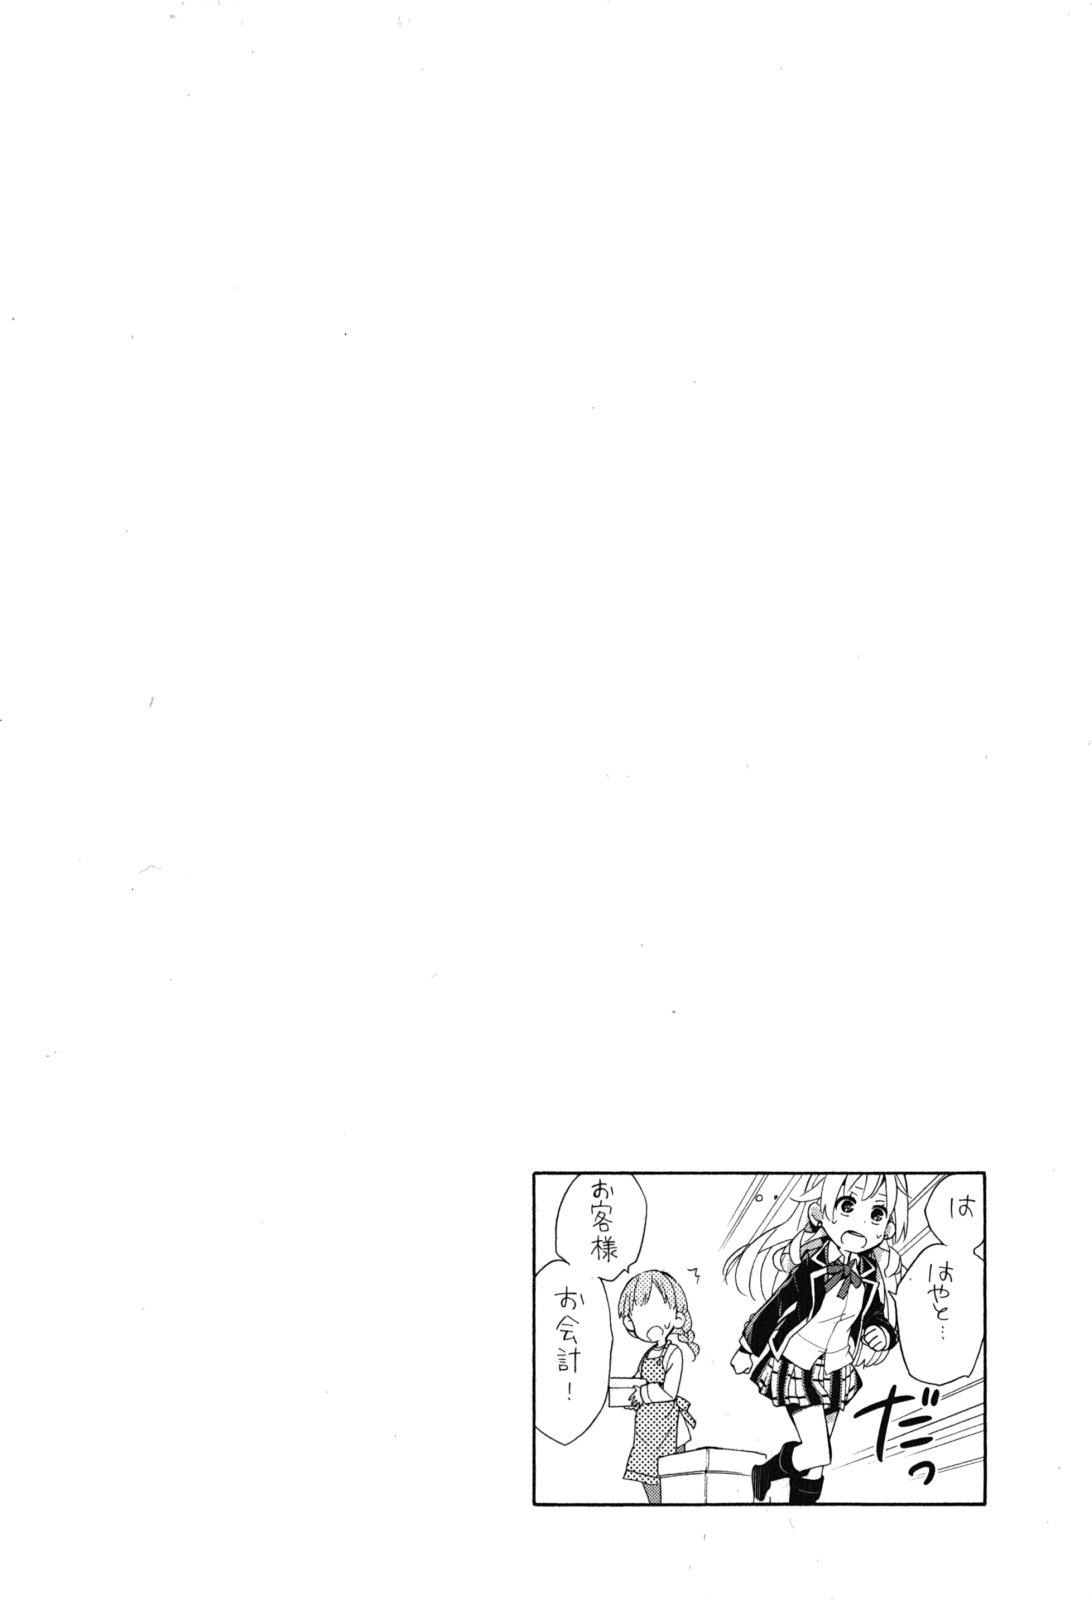 Yahari Ore no Seishun Love Come wa Machigatteiru. Monologue Vol. 7 Ch. 32